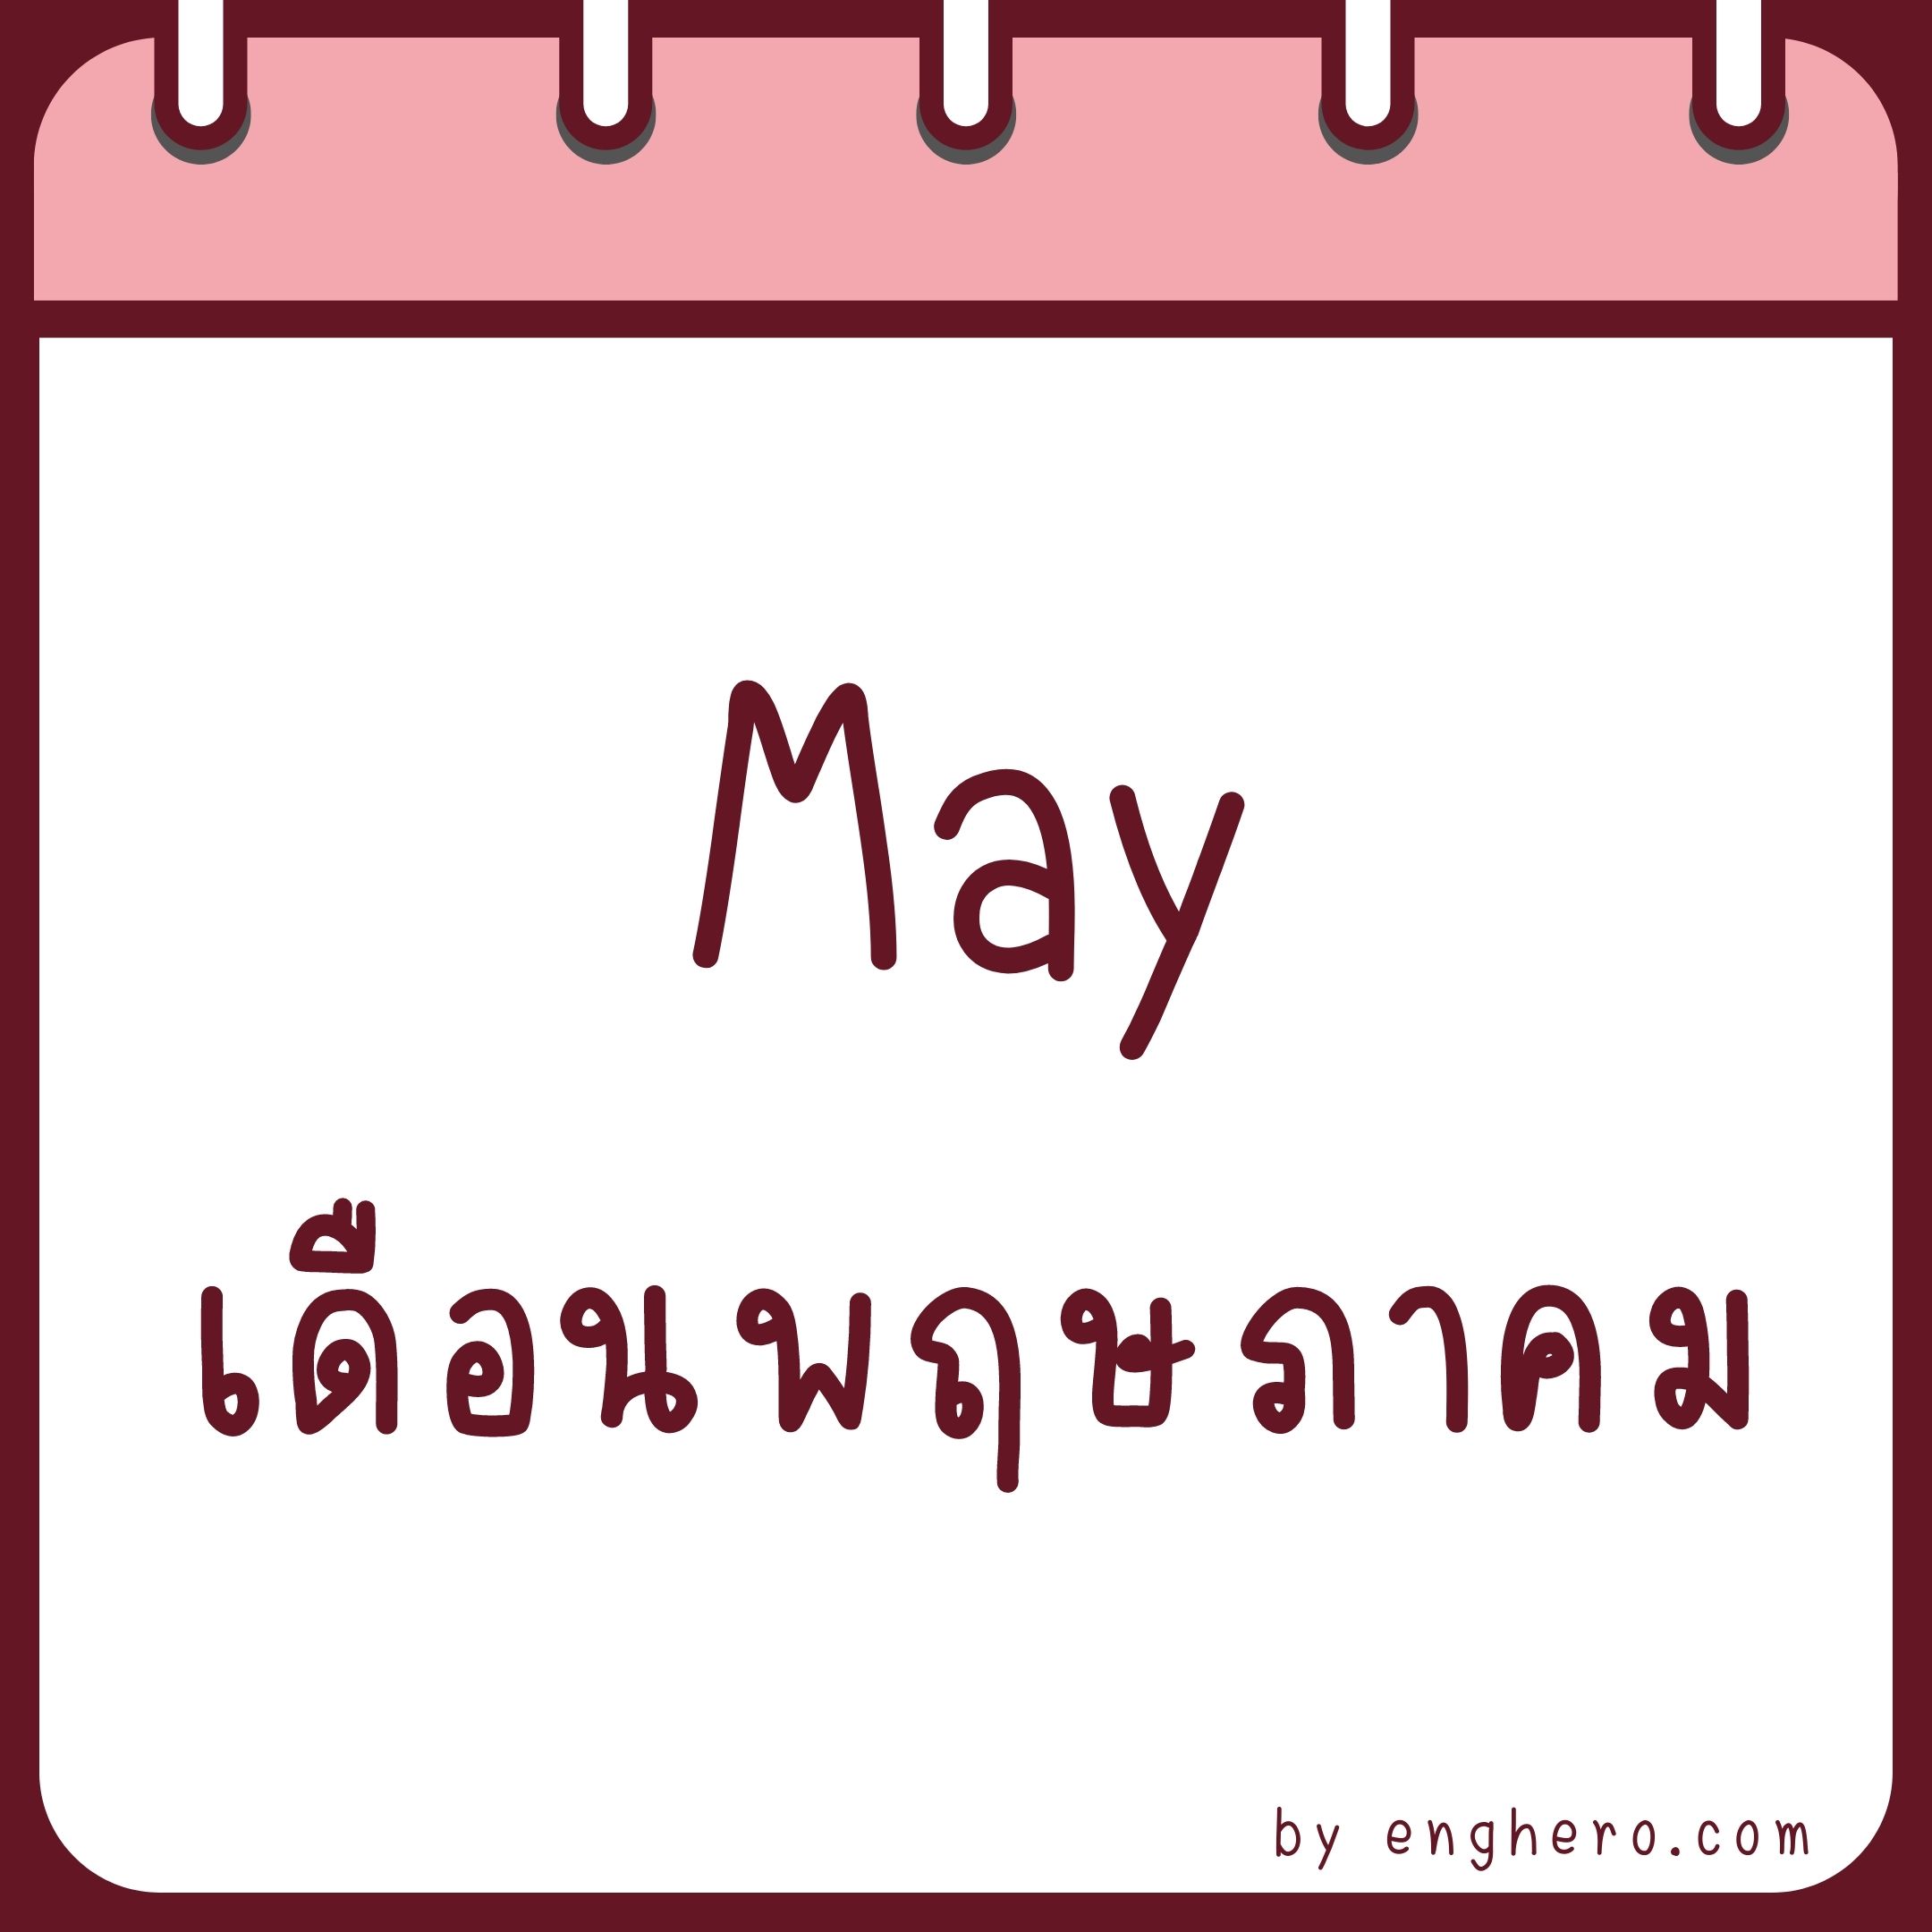 เดือนพฤษภาคม ภาษาอังกฤษ คือ May